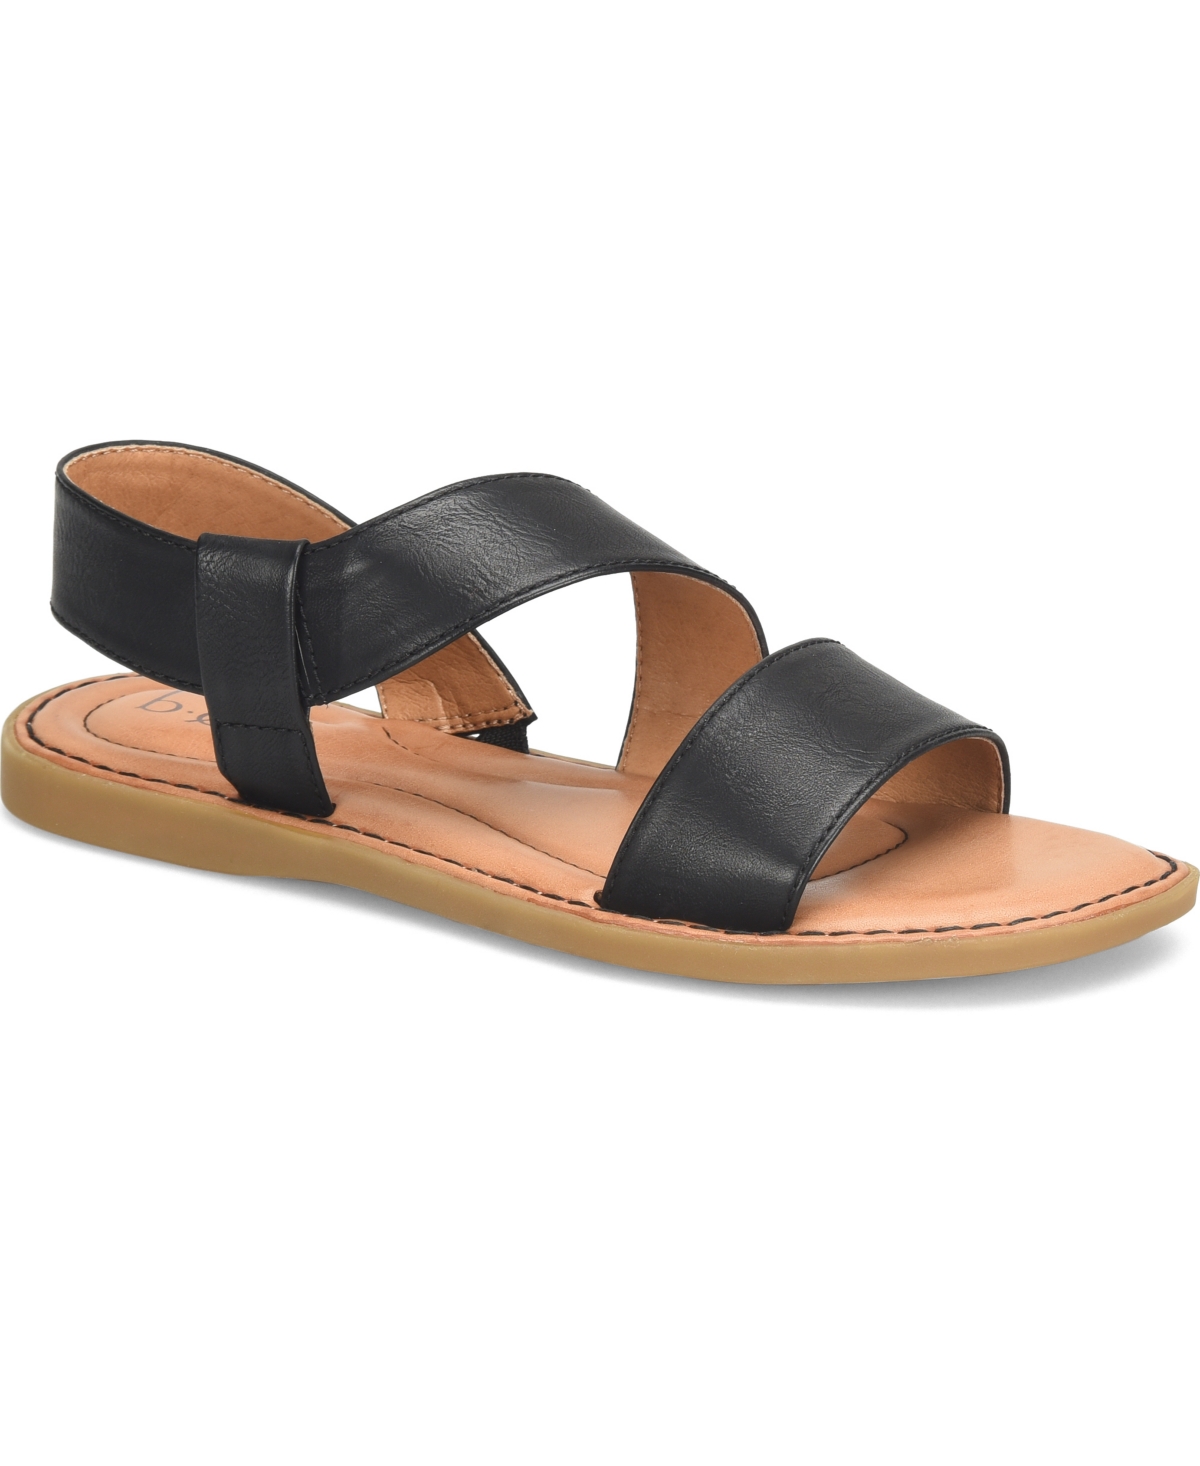 Women's Kacee Criss Cross Flat Comfort Sandals - DARK TAN